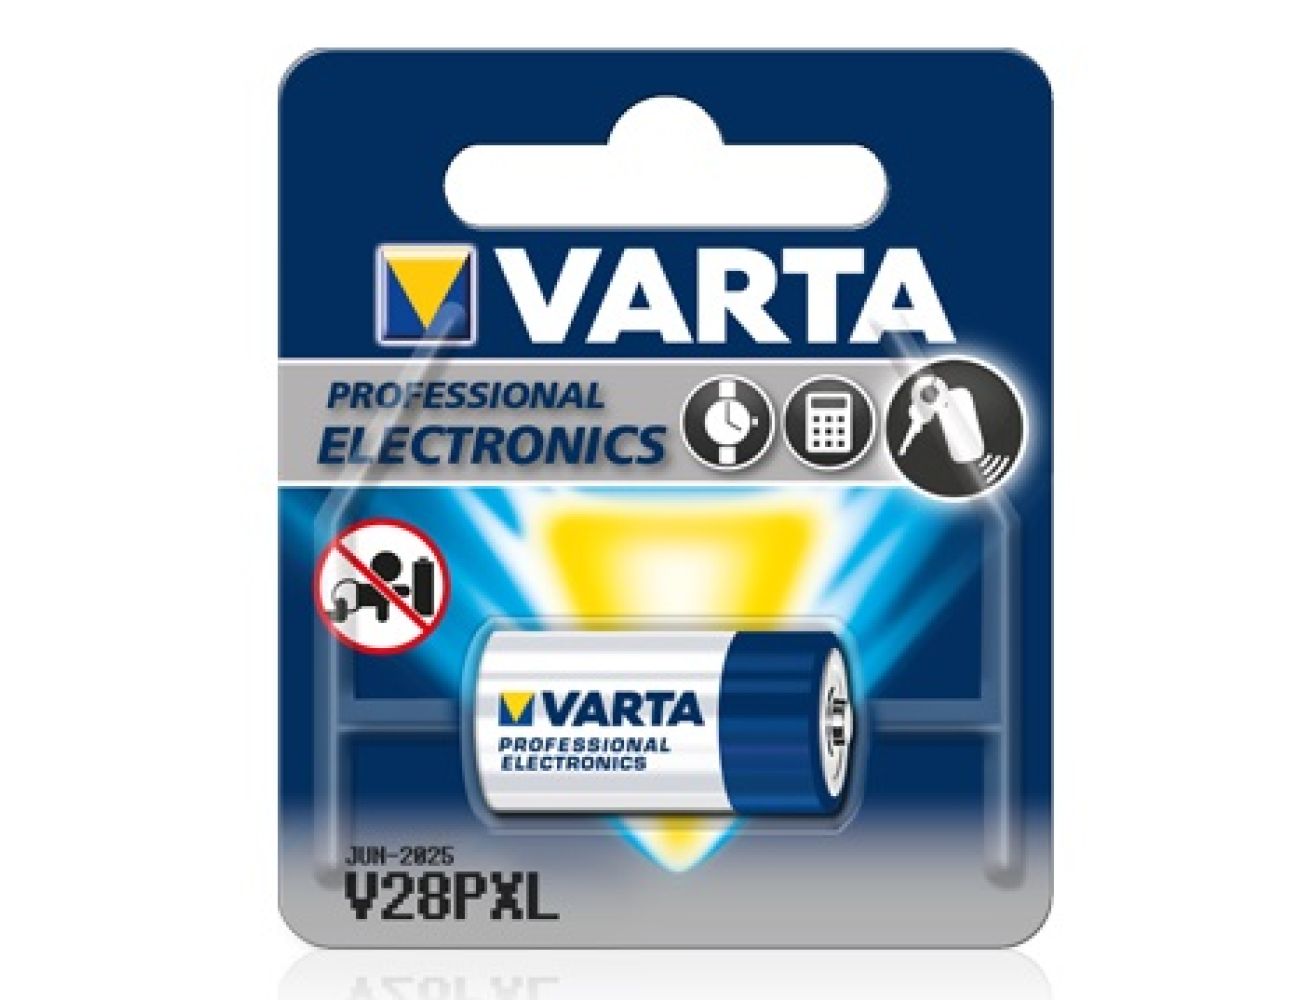 Батарейка Varta V28PXL Professional Electronics (2CR11108, 170mAh, 6V, Литиевая) 06231101401